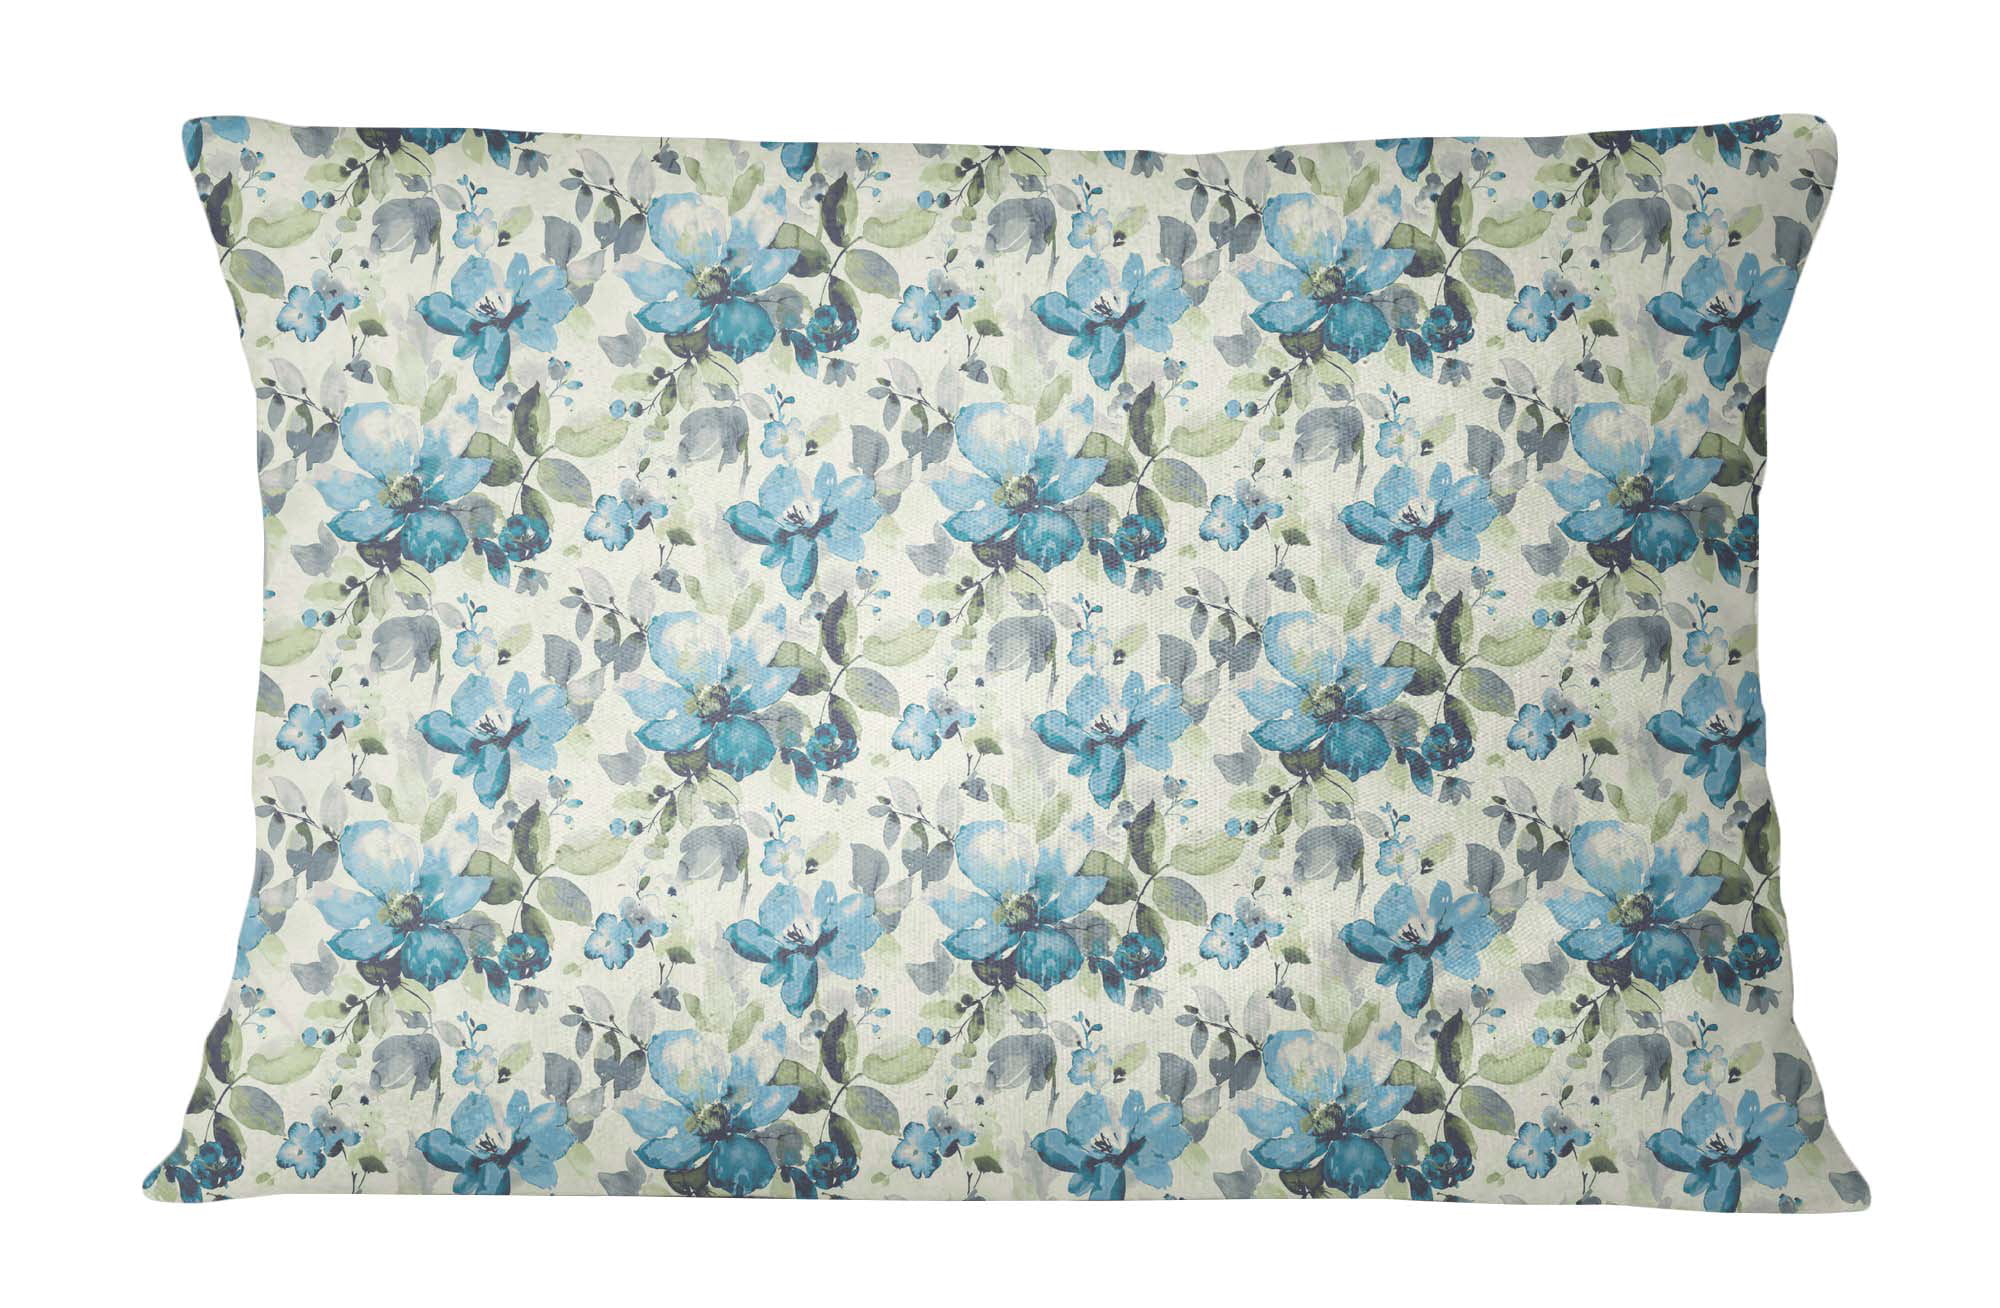 Decorative Aqua Cushion Cover Cotton Poplin Floral Paisley Sham Pillow Case 